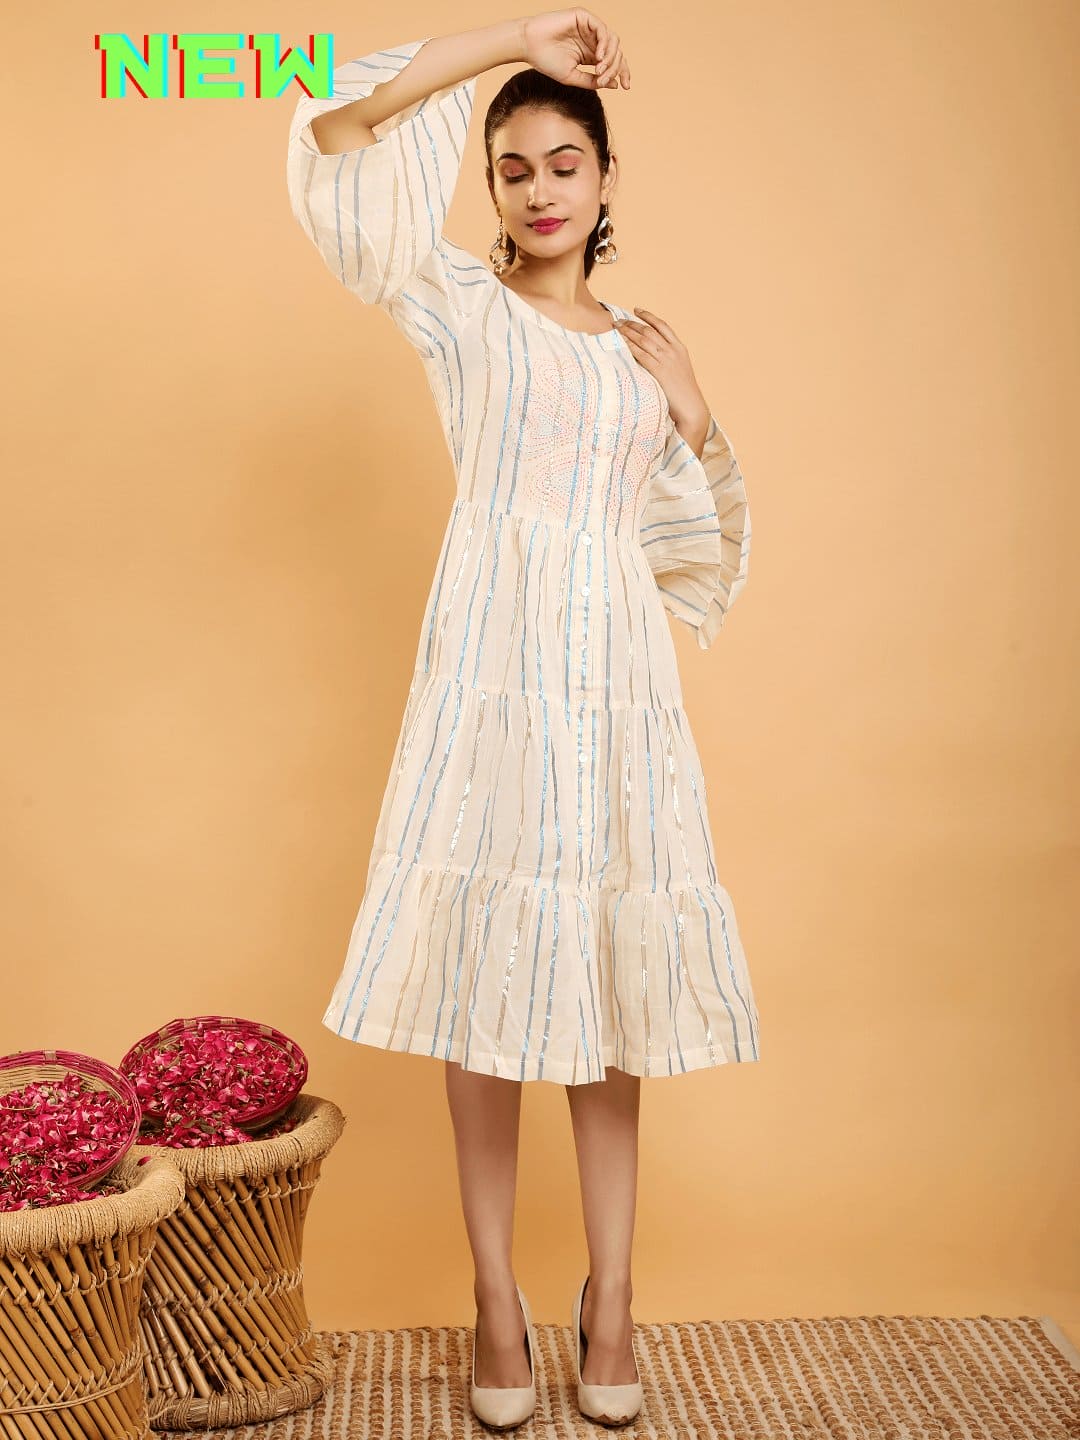 Off-White Lurex Stripe Hand Embroidered Dress - Charkha TalesOff-White Lurex Stripe Hand Embroidered Dress